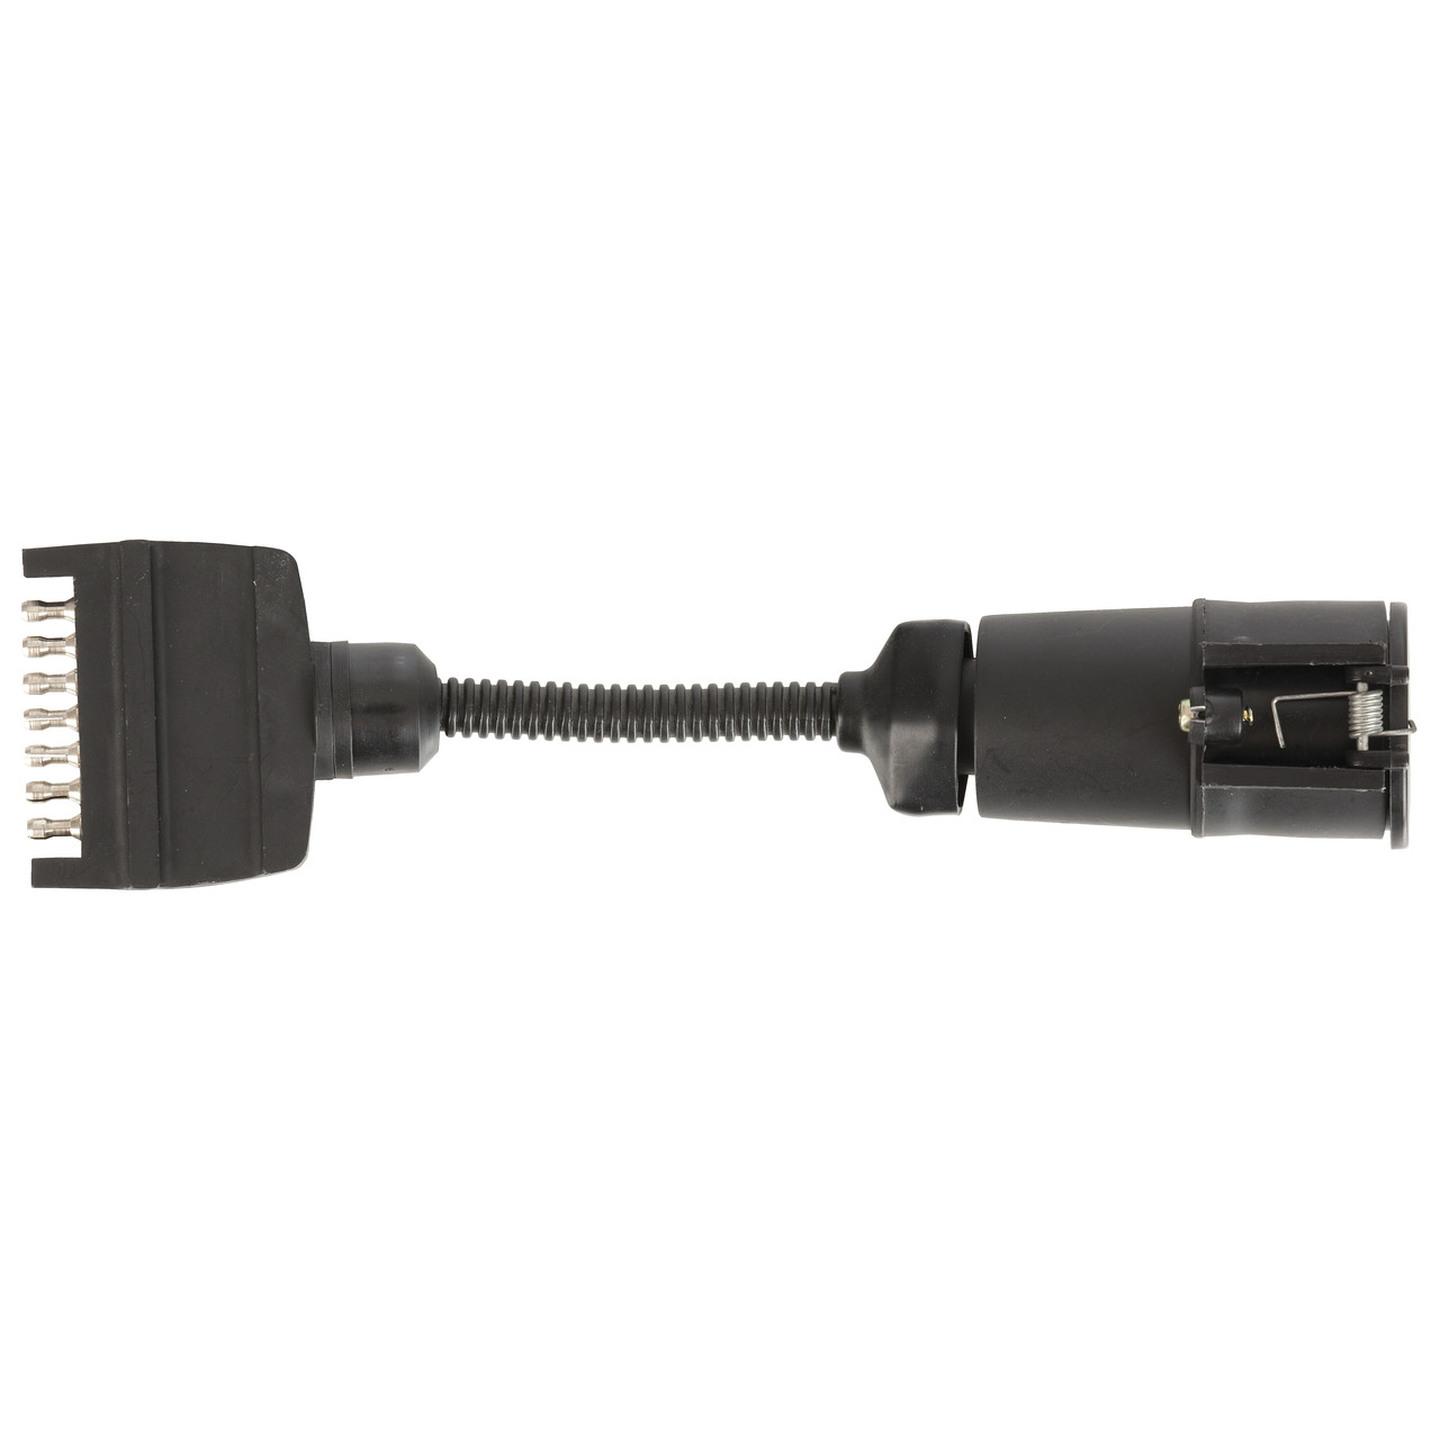 Trailer Adaptor - 7 Pin Flat Plug to 7 Pin Large Round Socket